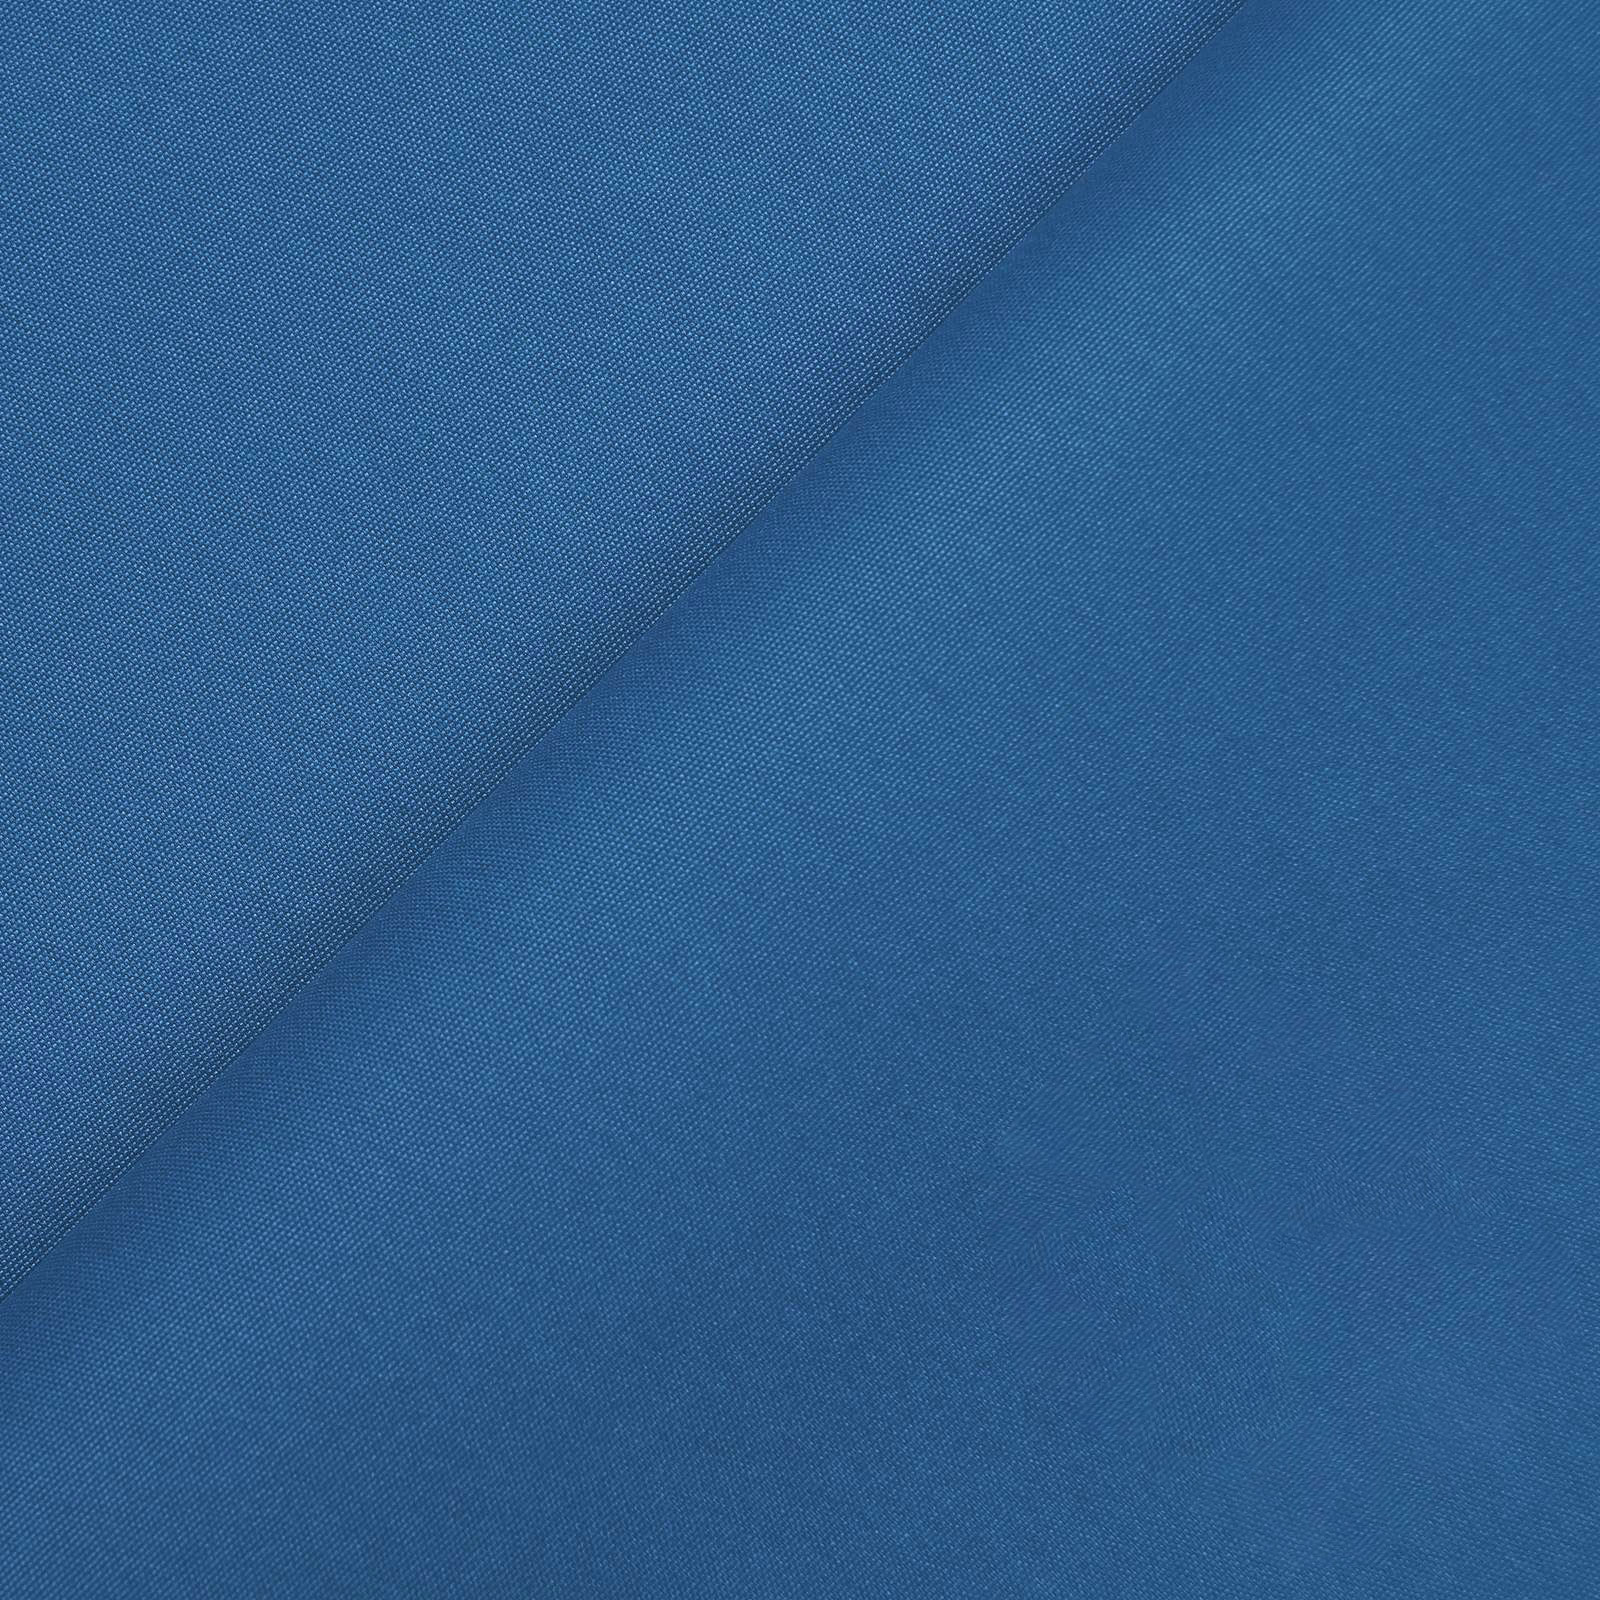 Peach - tejido multifuncional con acabado (azul real)